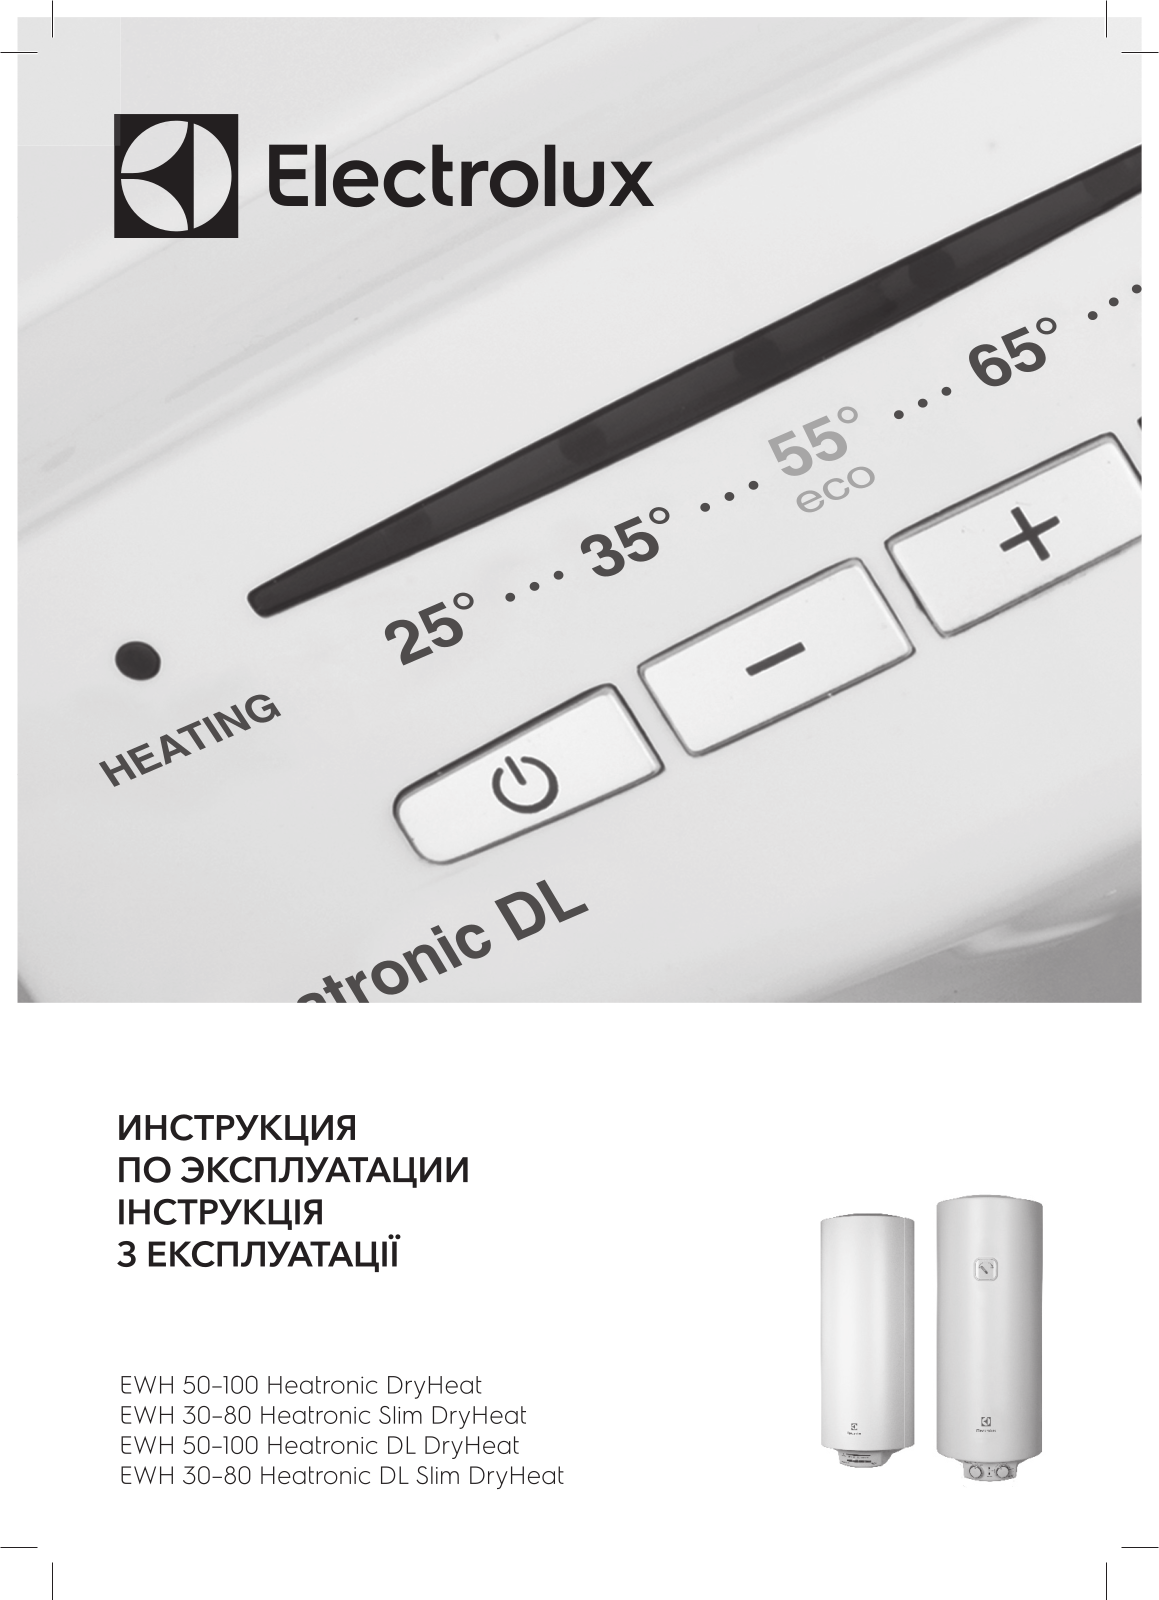 Electrolux EWH 80 Heatronic DL Slim DryHeat, EWH 30 Heatronic Slim DryHeat, EWH 50 Heatronic Slim DryHeat, EWH 50 Heatronic DL Slim DryHeat, EWH 80 Heatronic Slim DryHeat User Manual